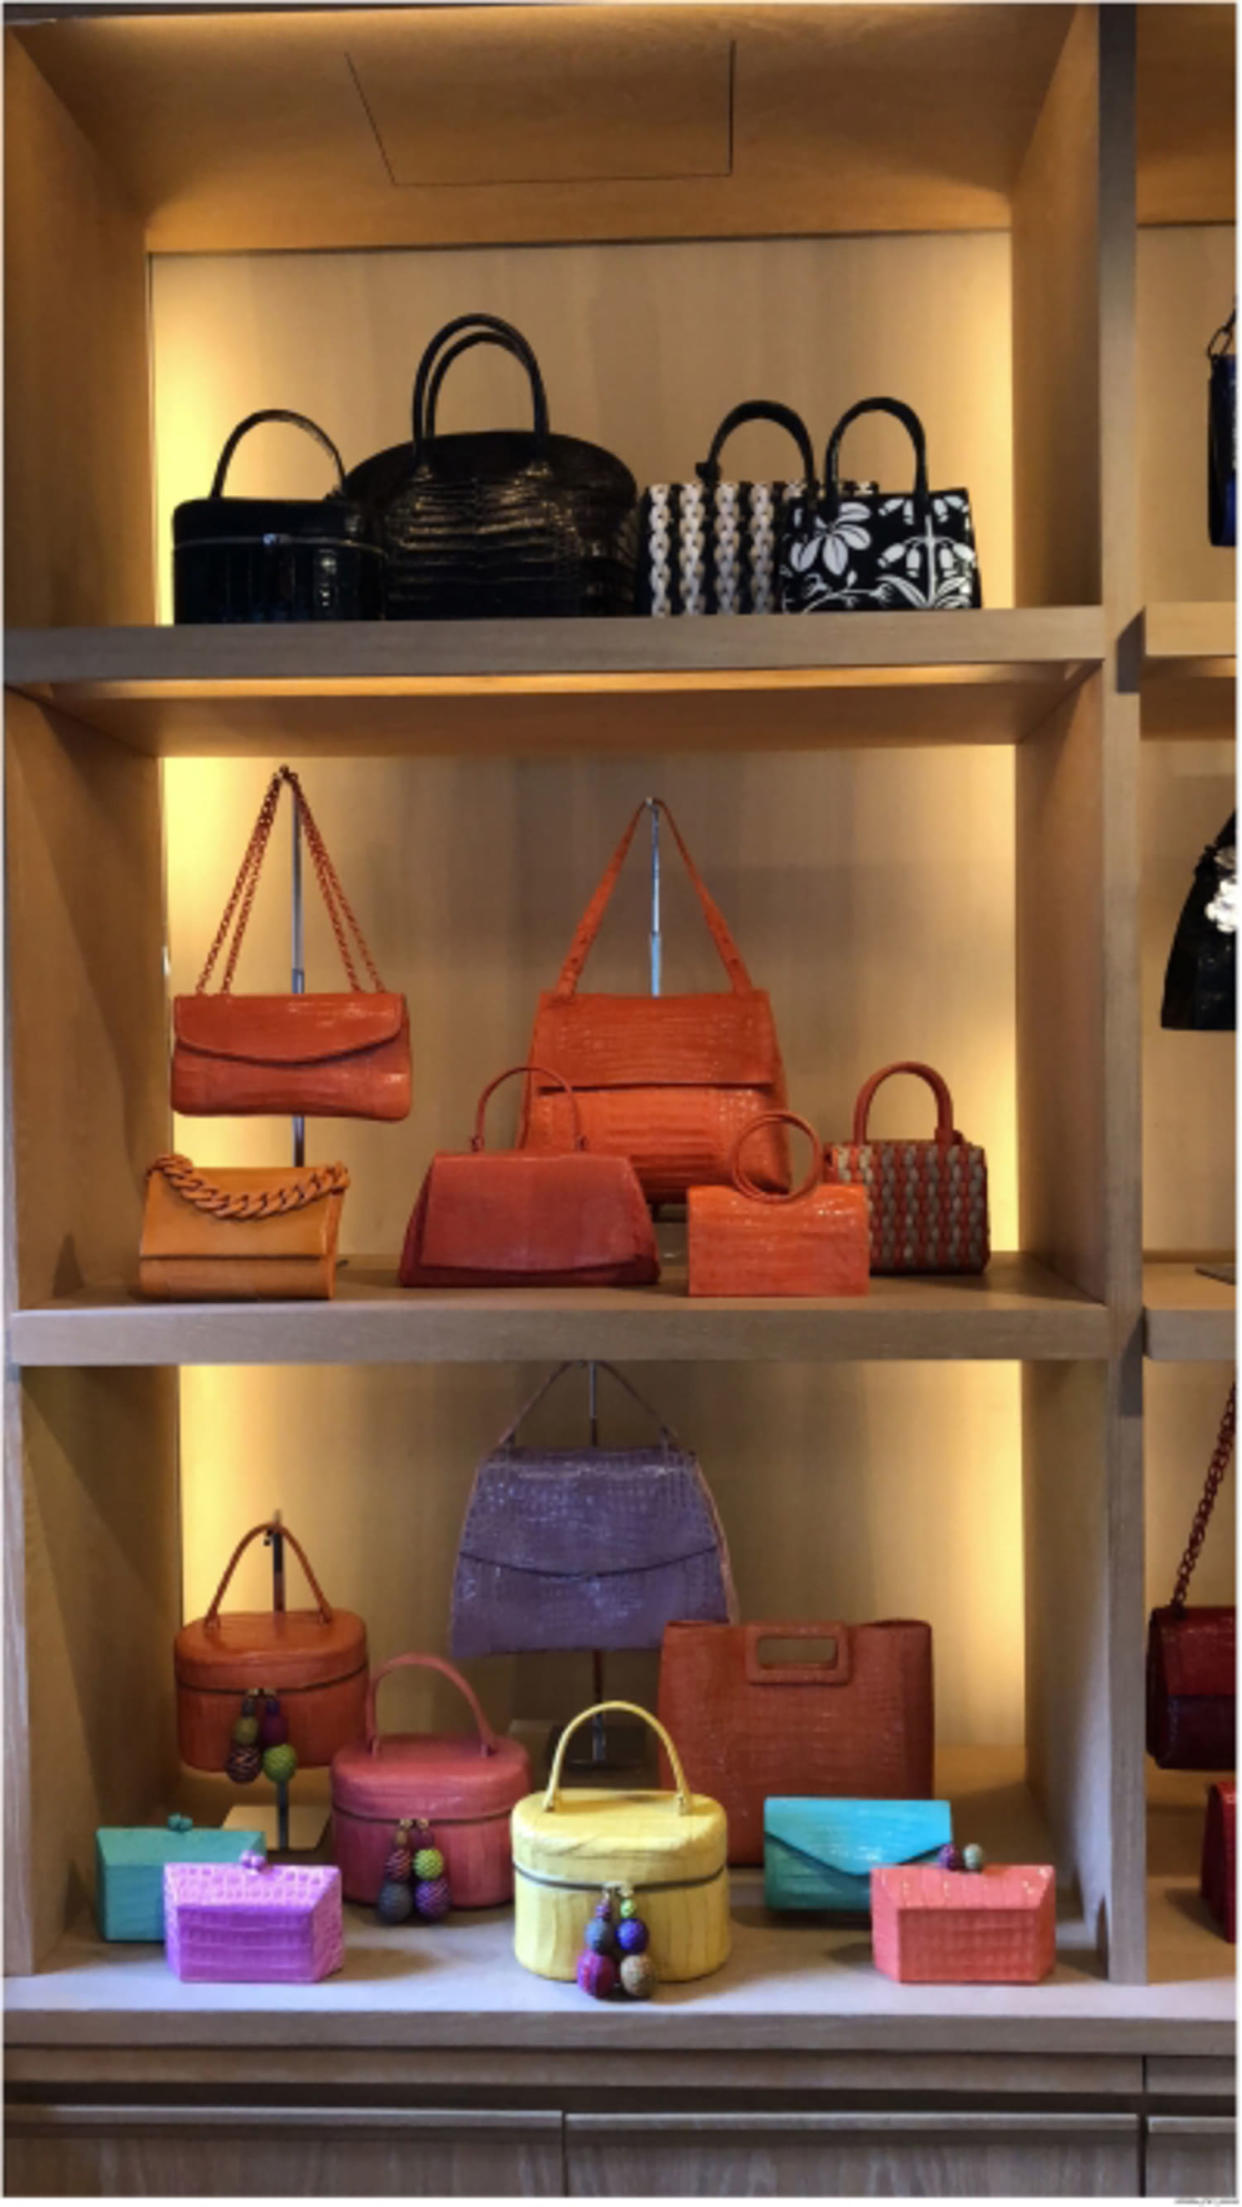 Handbags designed by Nancy Gonzalez displayed in the Gzuniga Ltd. showroom. (U.S. Dept. of Justice)